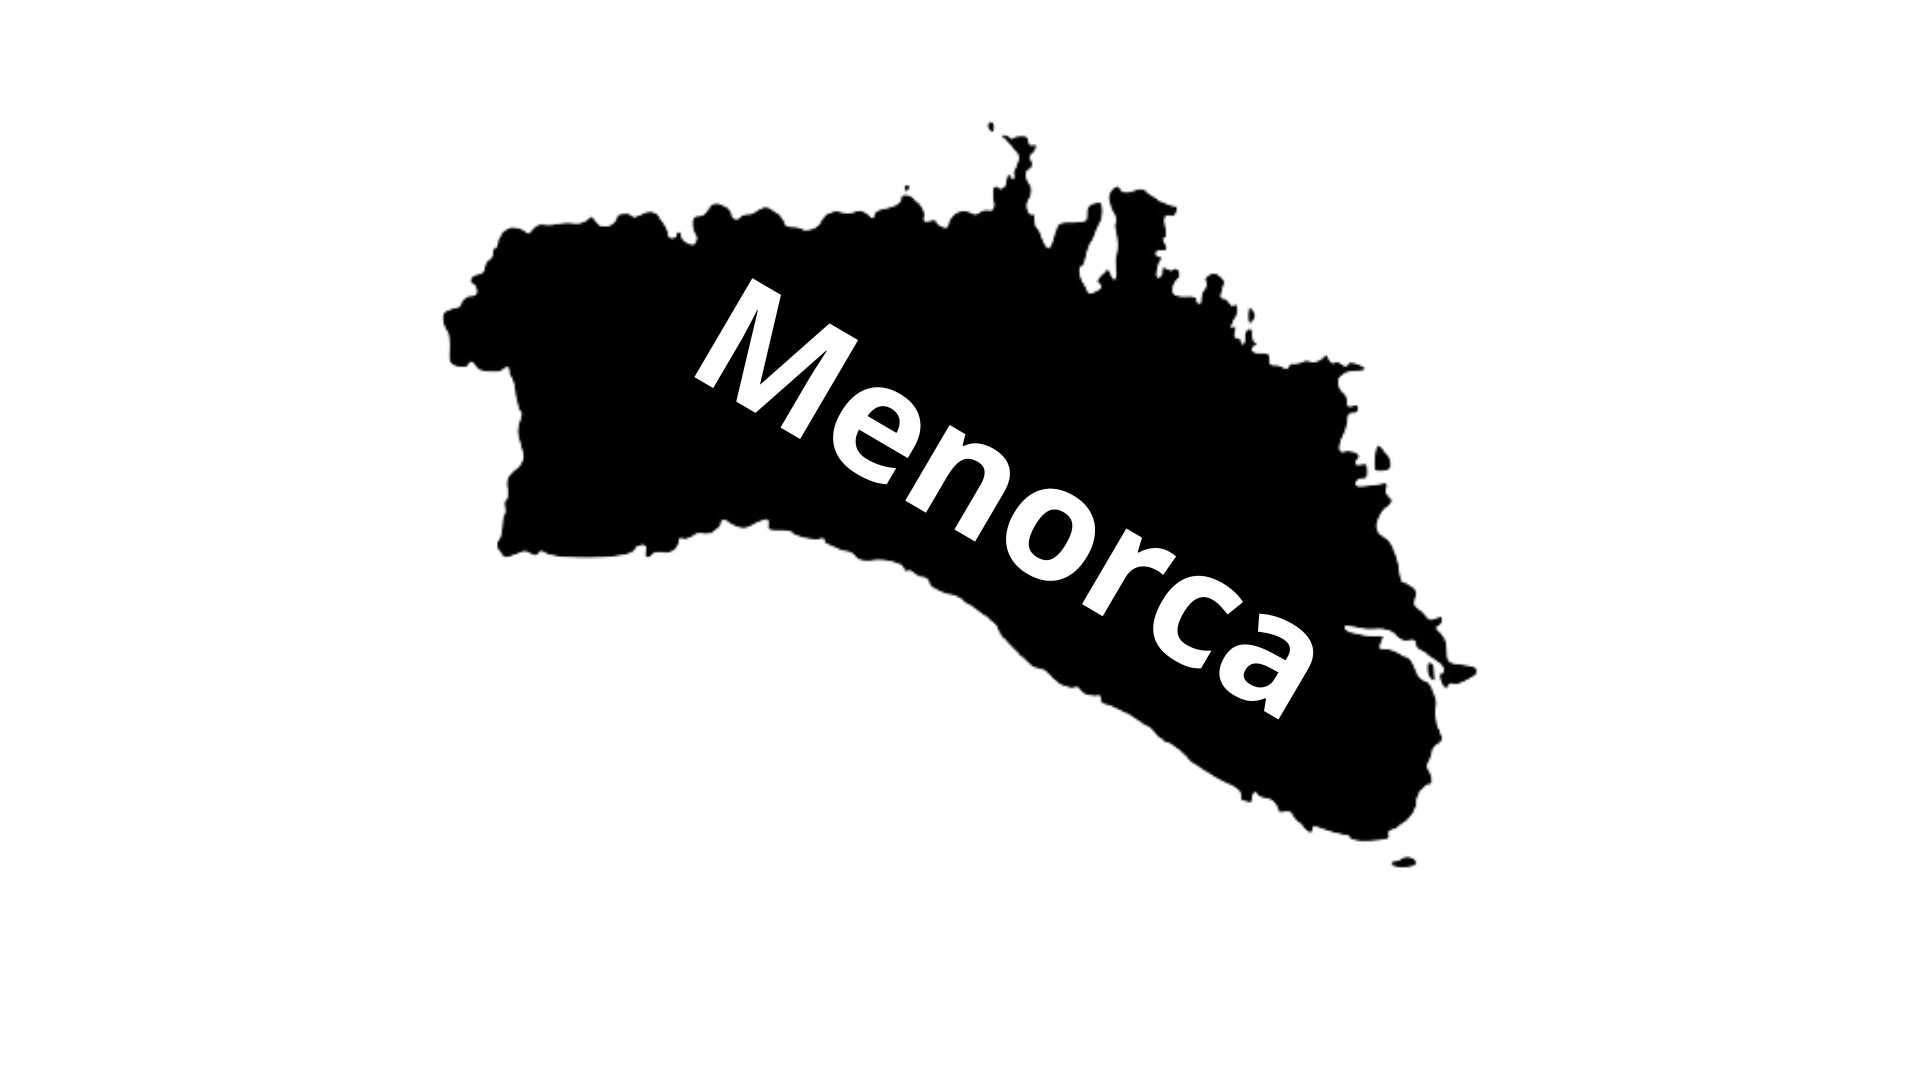 Illa de Menorca